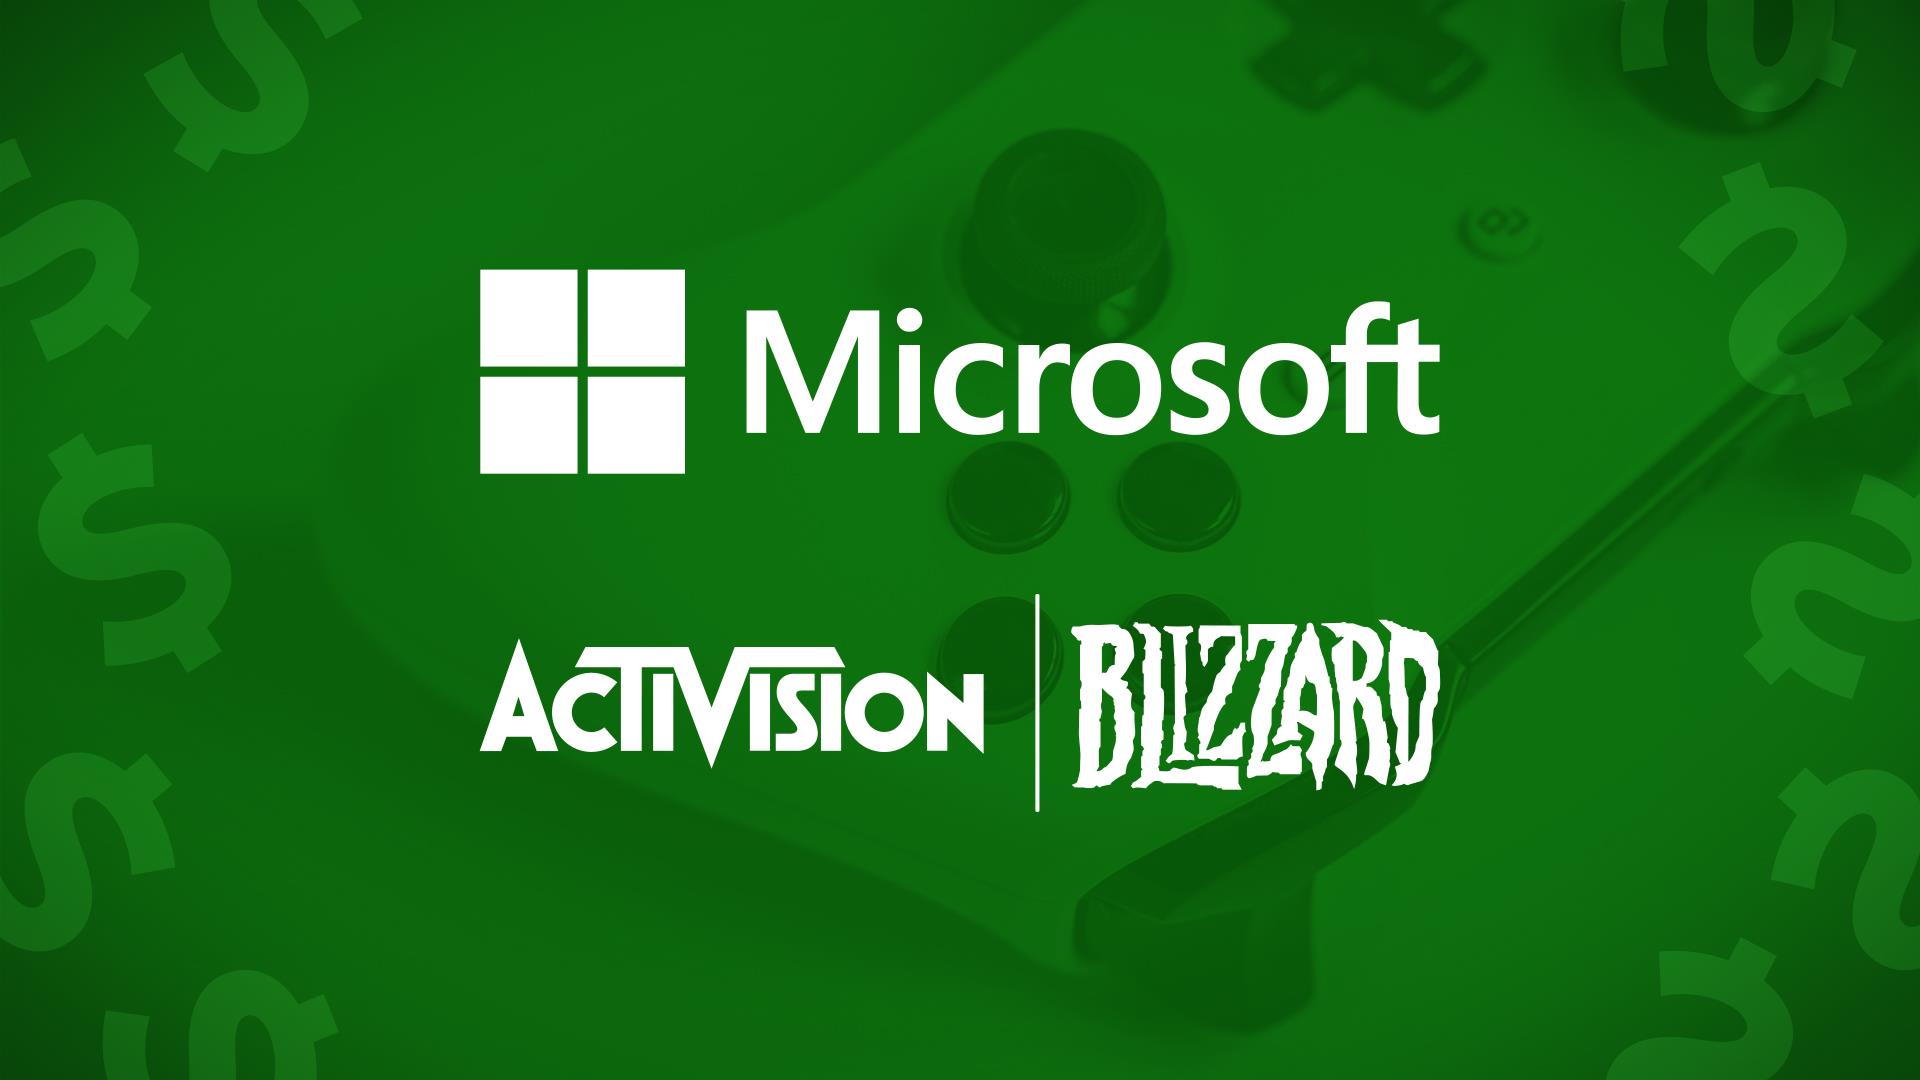 Microsoft achète Activision-Blizzard pour 69 milliards de dollars
Microsoft achète Activision-Blizzard pour 69 milliards de dollars